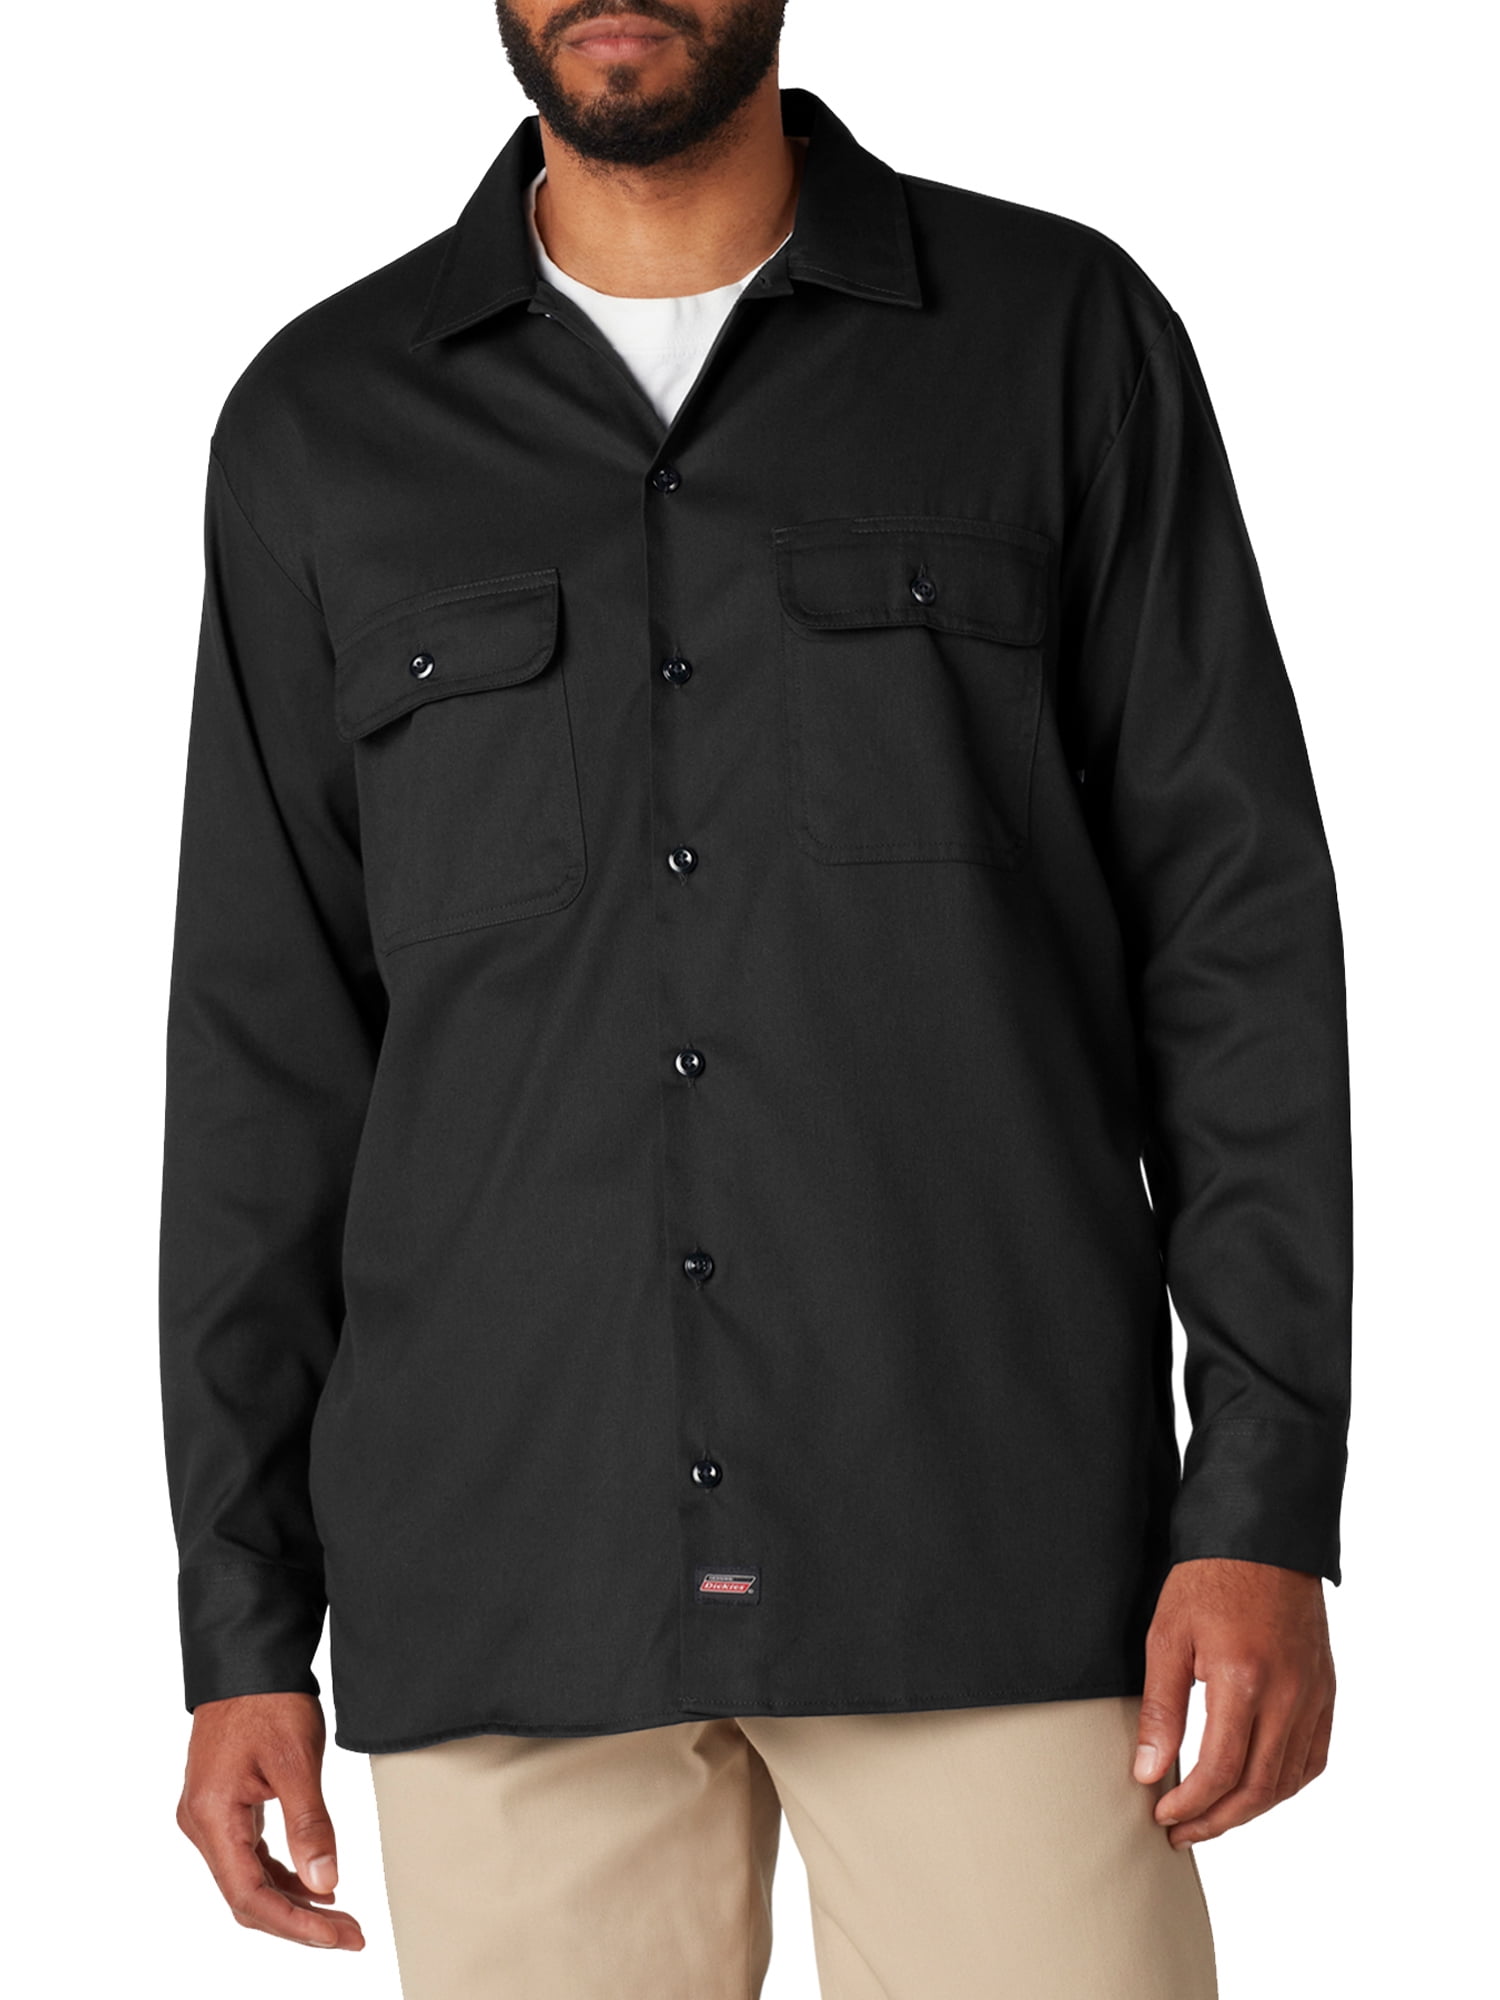 DICKIES 574 Men's Long Sleeve Work Shirt Button Front Work Shirt  BROWN BIG&TALL